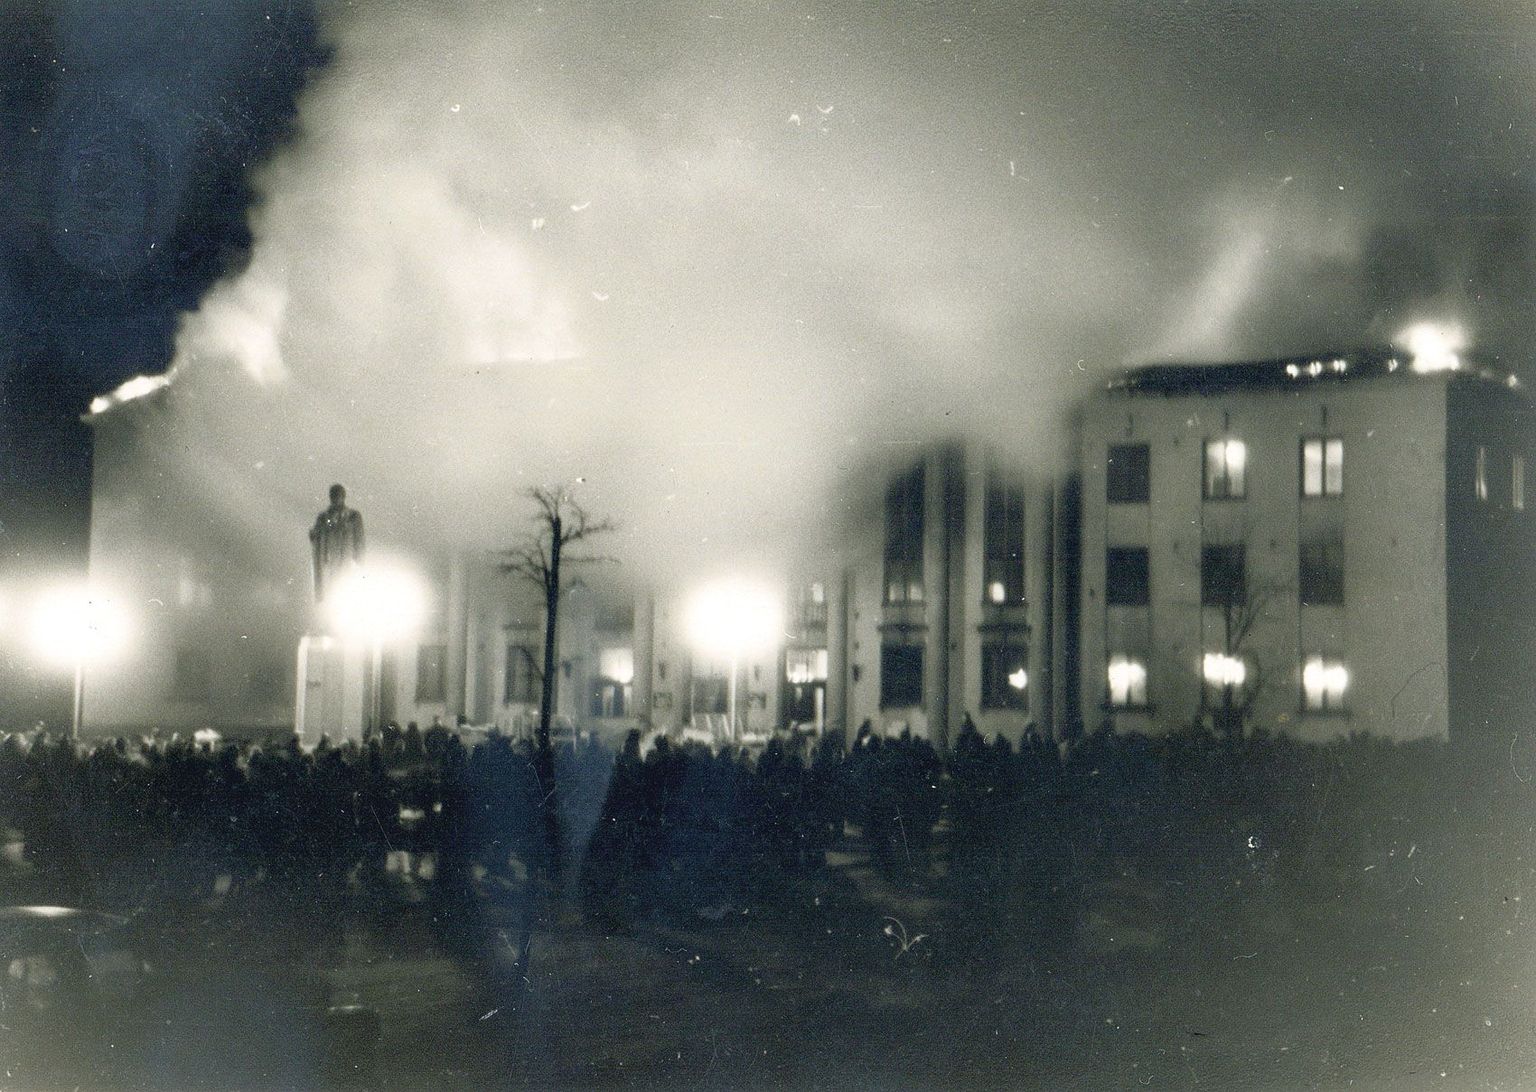 Eesti põllumajanduse akadeemia peahoone põlengut kogunes vaatama tohutult palju tartlasi. Rahvahulgast kõrgemal ei seisnud elus inimene – see oli Lenini kuju postamendi otsas.